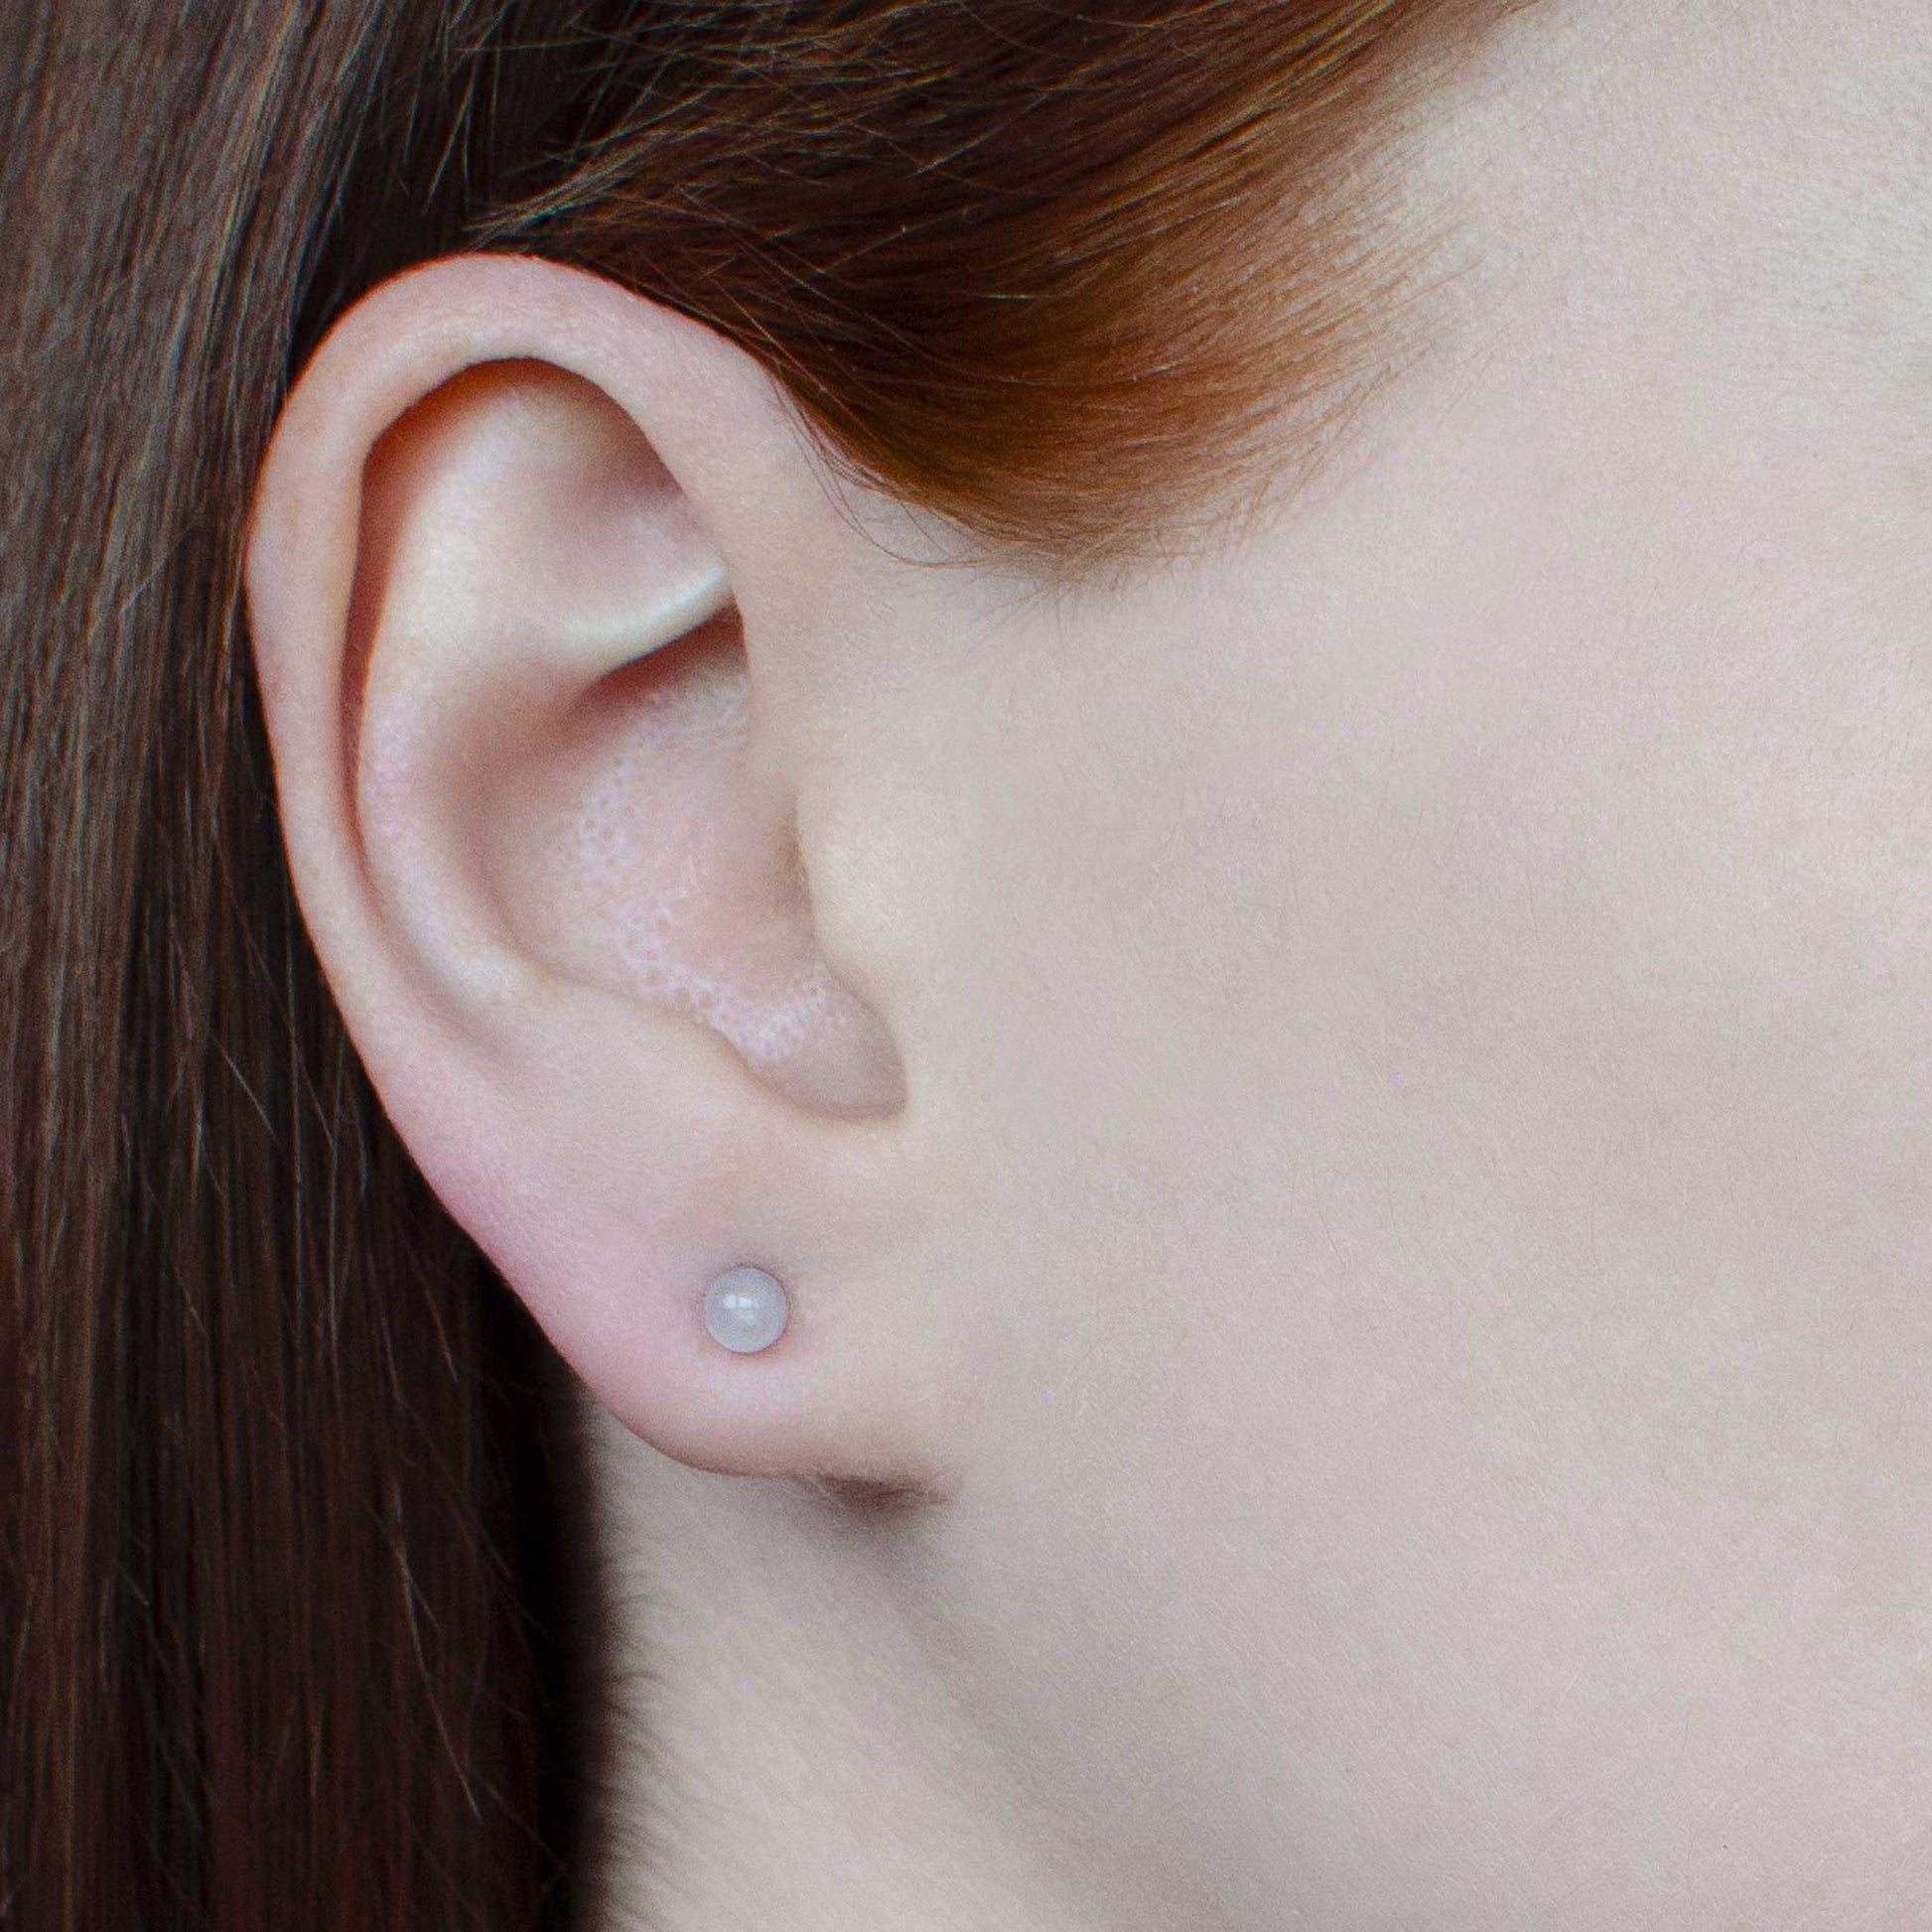 Woman wearing small Rose Quartz stud earring in earlobe